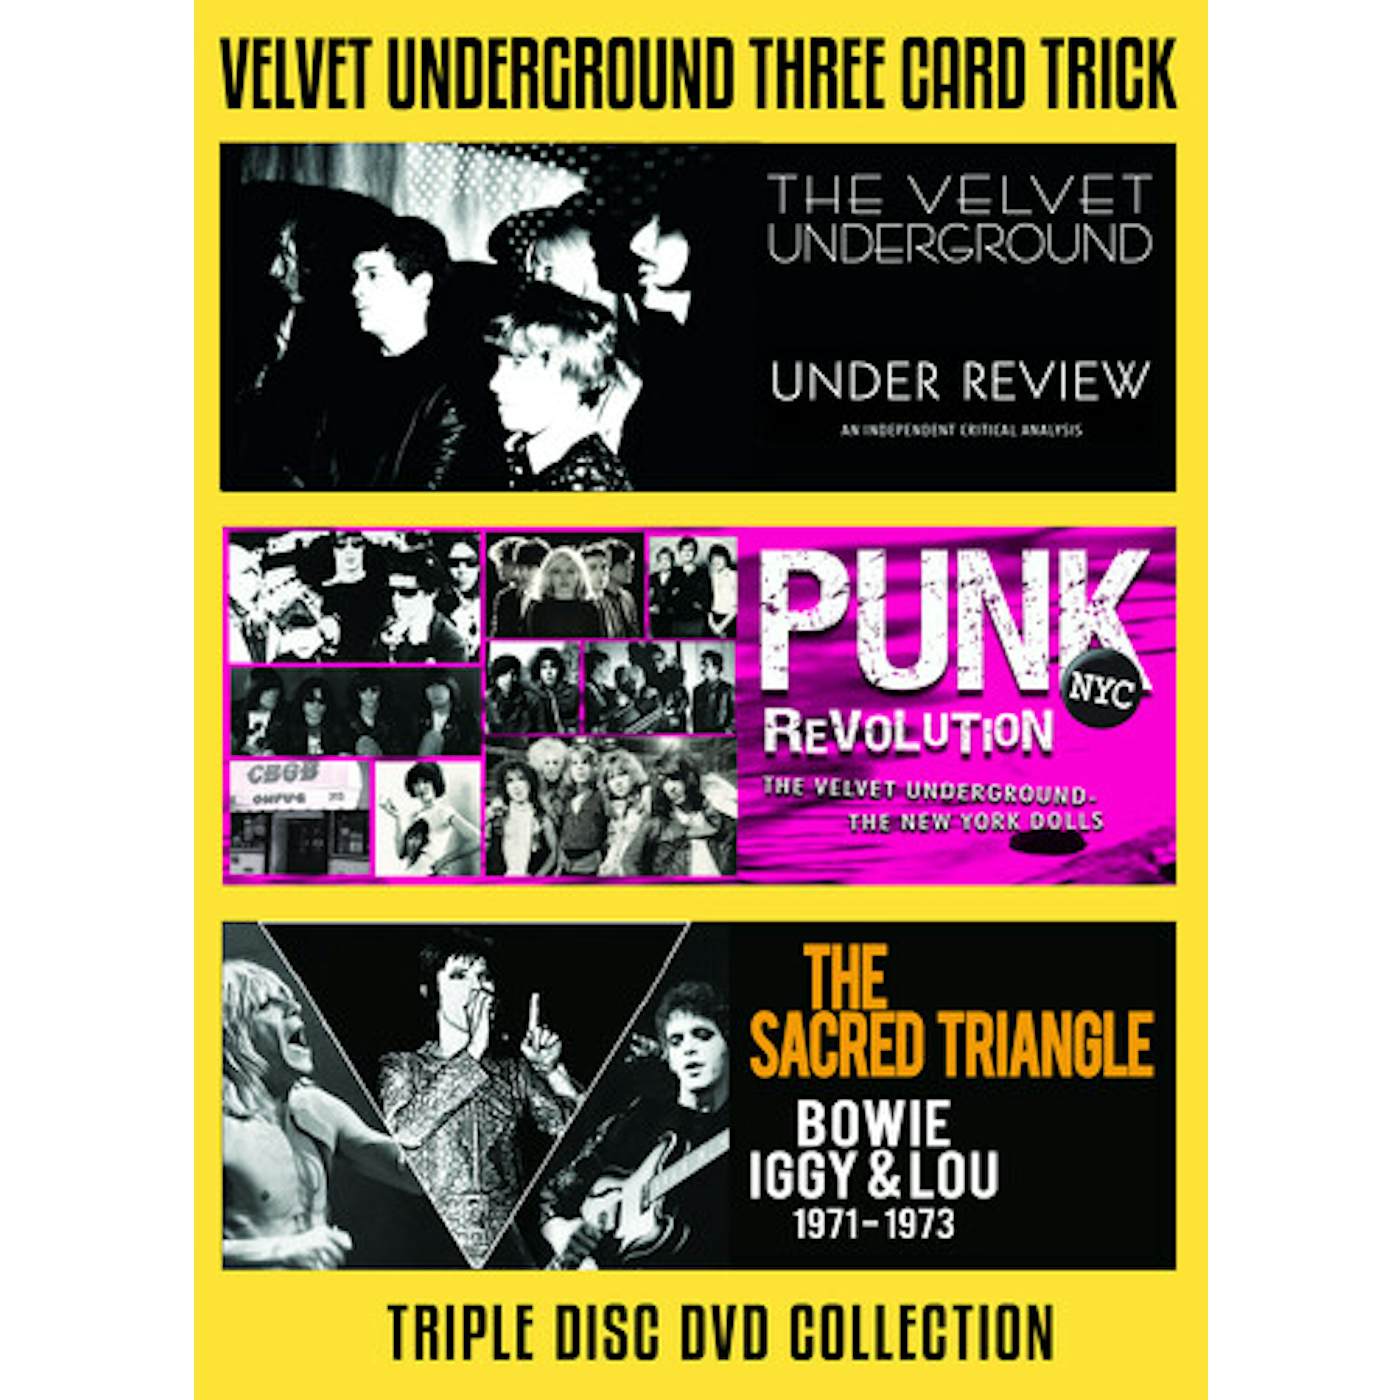 The Velvet Underground THREE CARD TRICK DVD